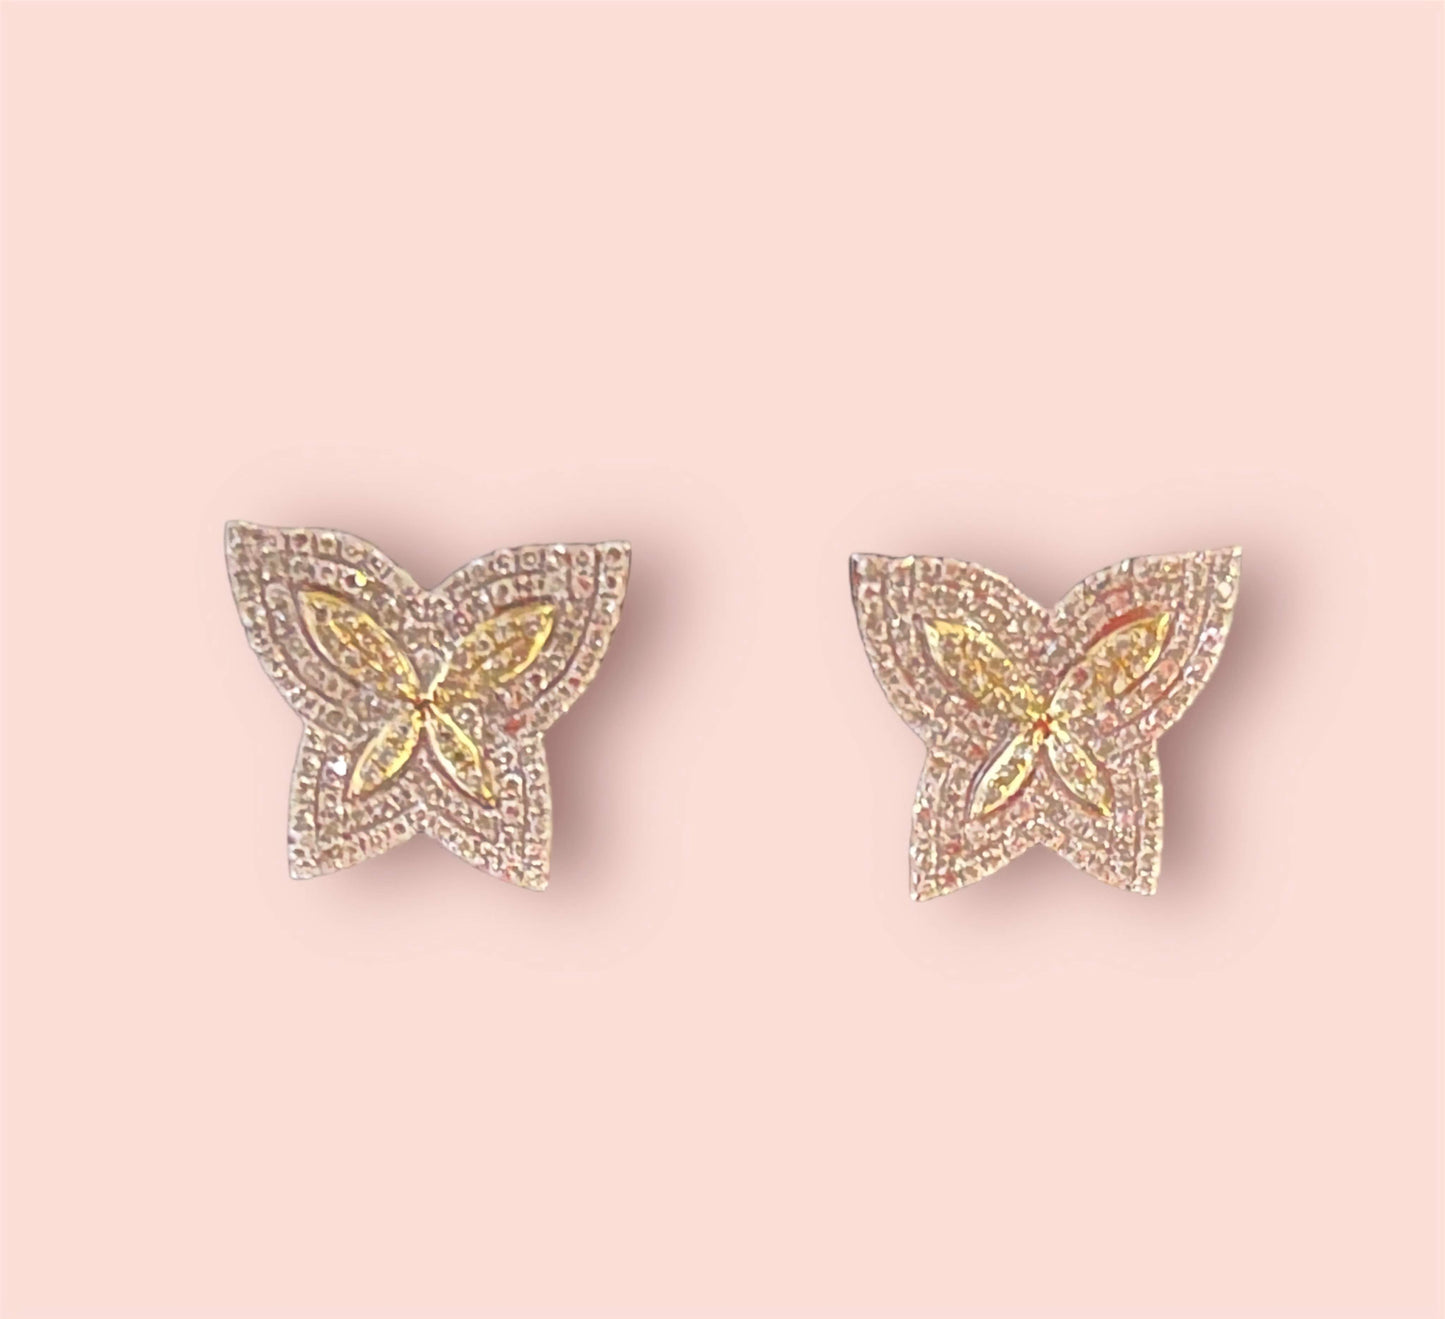 10K Butterfly Diamond Studs